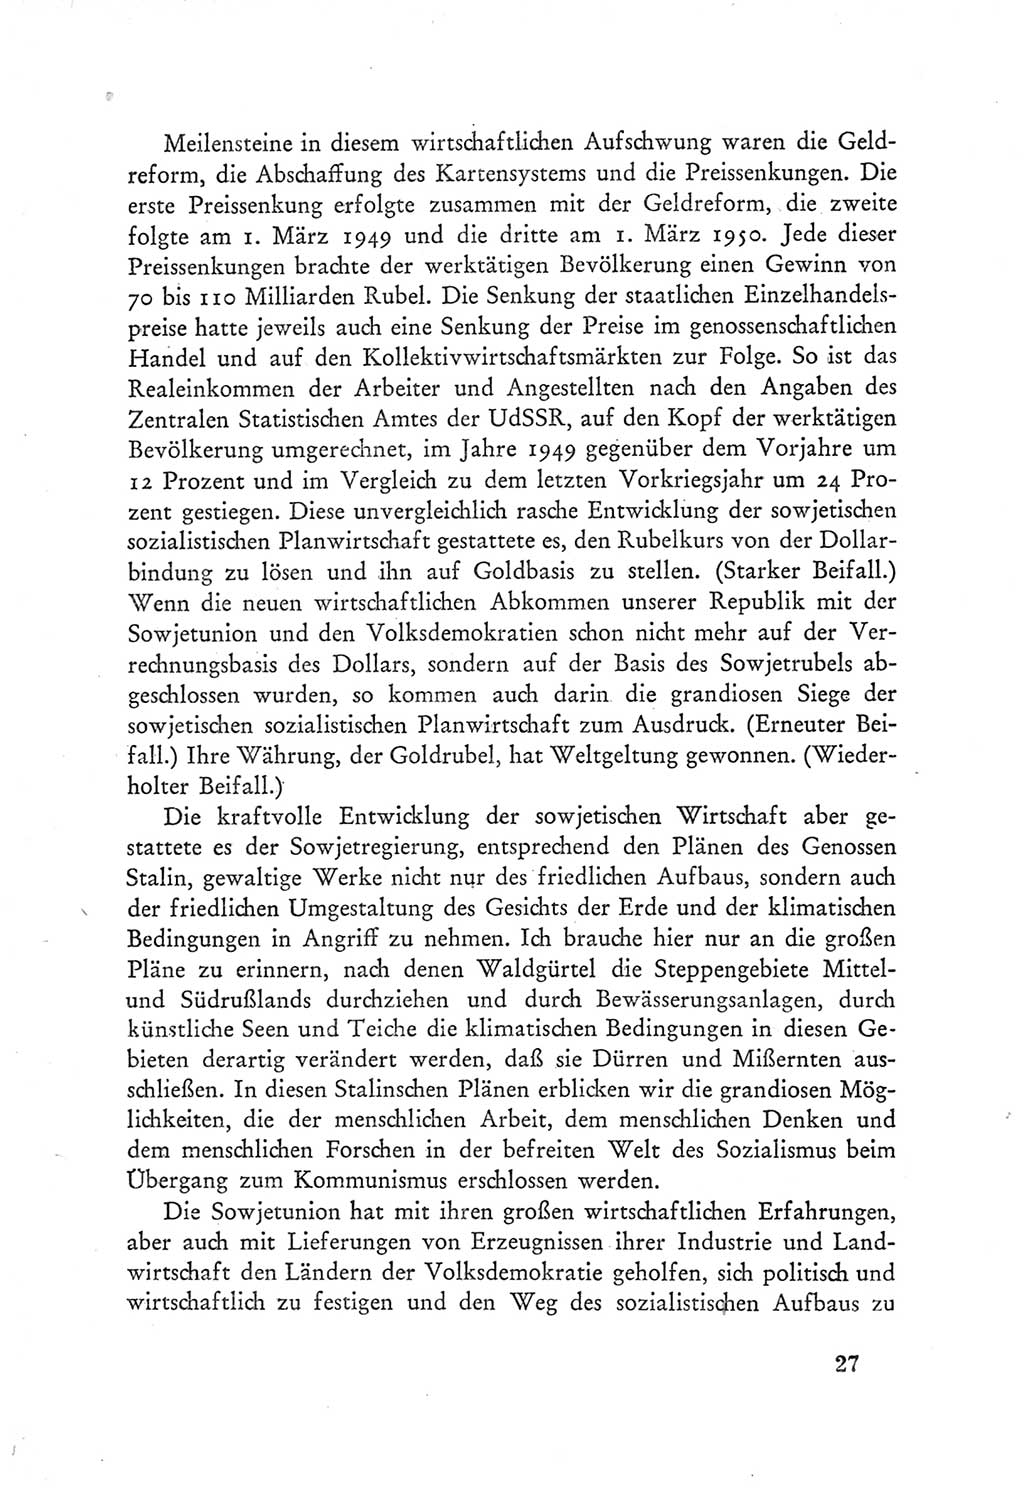 Protokoll der Verhandlungen des Ⅲ. Parteitages der Sozialistischen Einheitspartei Deutschlands (SED) [Deutsche Demokratische Republik (DDR)] 1950, Band 1, Seite 27 (Prot. Verh. Ⅲ. PT SED DDR 1950, Bd. 1, S. 27)